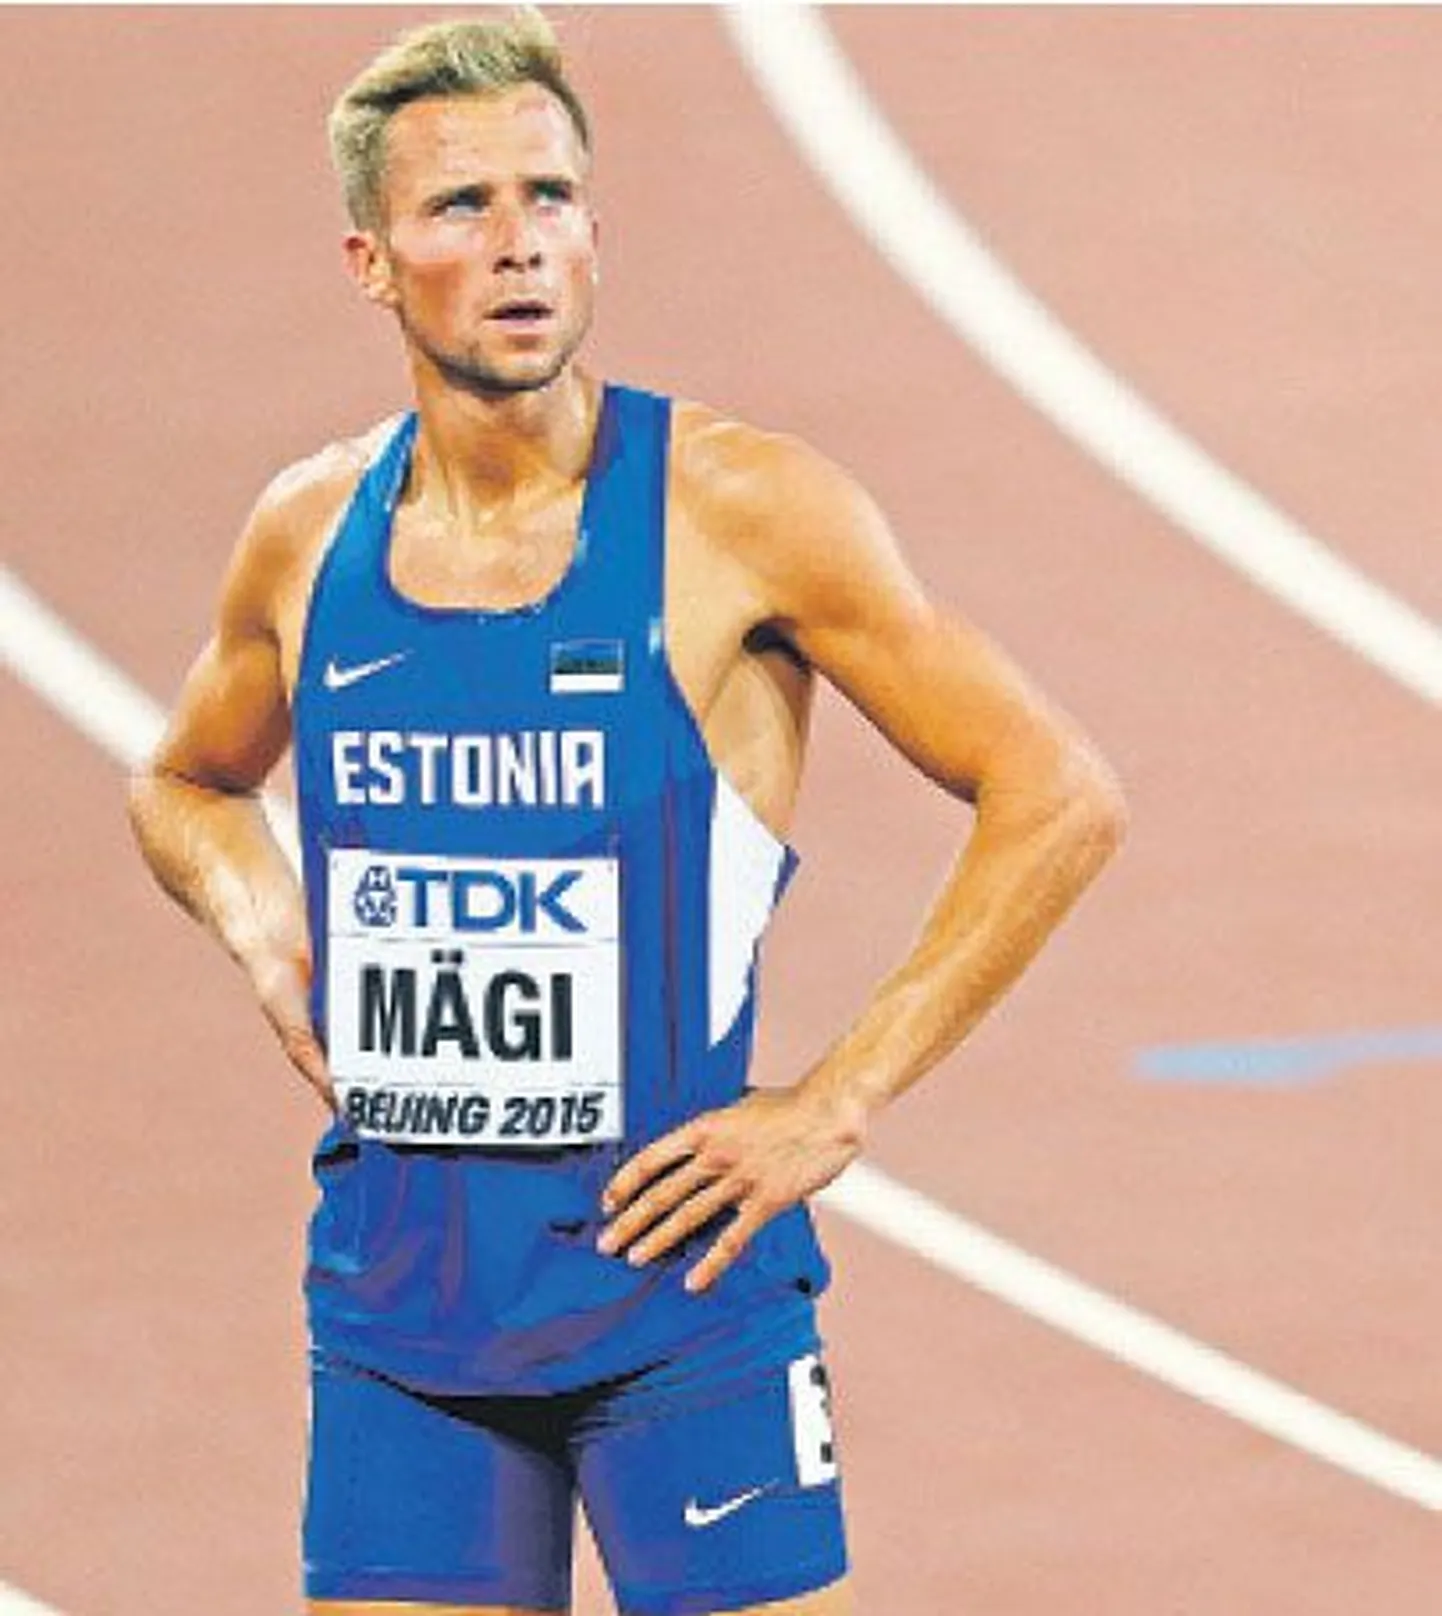 Эстонский легкоатлет Расмус Мяги, занявший на ЧМ в беге на 400 метров с барьерами 13-е место, анализирует, что пошло не так в Пекине.